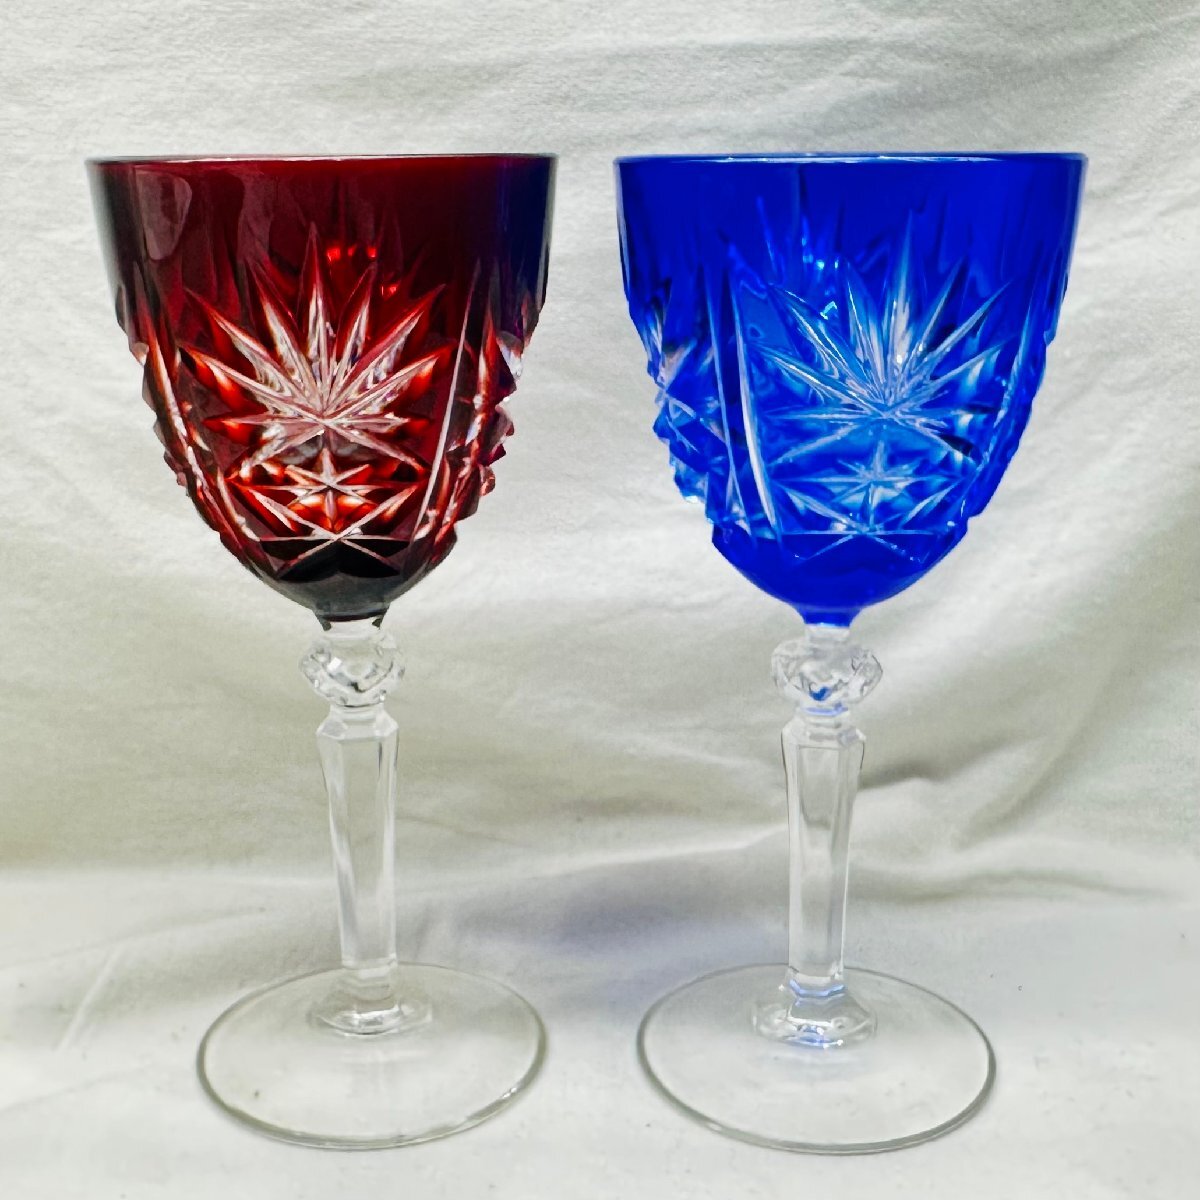 ワイングラス 色被せ切子 青 赤 2つセット 縦約14cm 口径約6cm 中古品の画像1